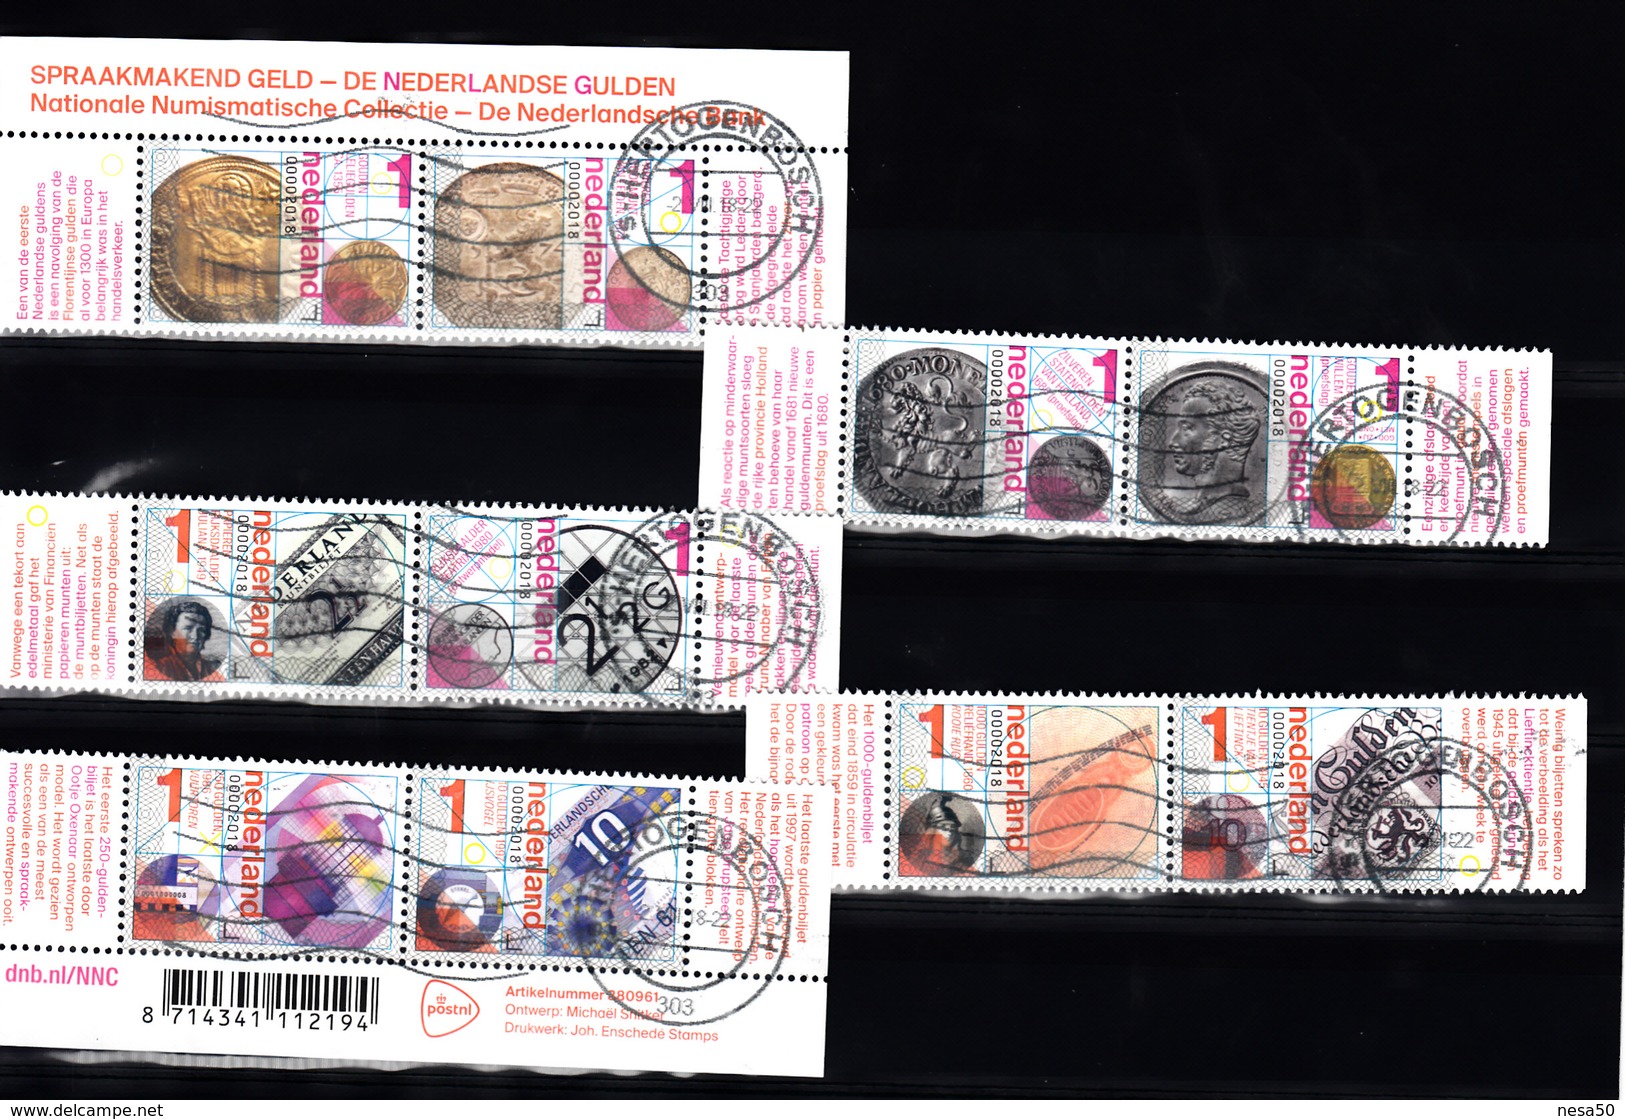 Nederland 2018, Nvph ??, Mi Nr ??,  De Nederlandse Gulden, Munt, Banknote, Vuurtoren, Lighthouse - Used Stamps